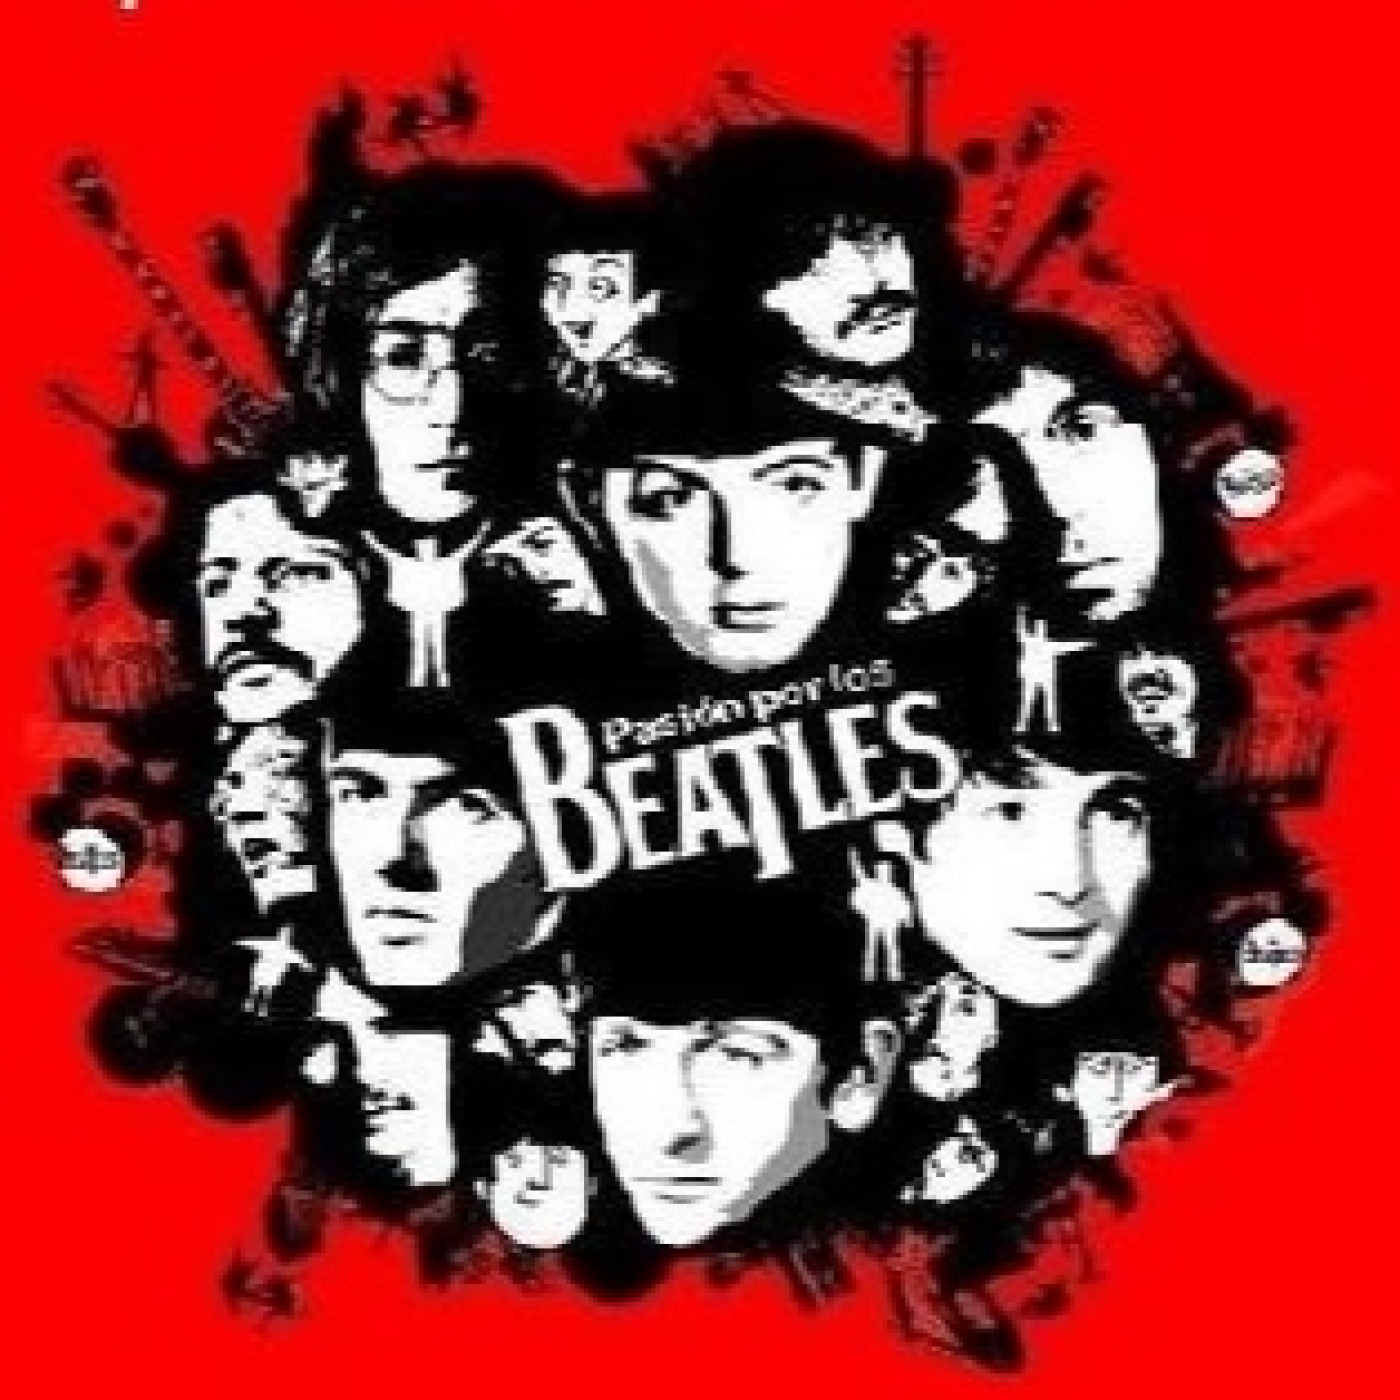 Pasión por los beatles 107 - Beatles For Sale